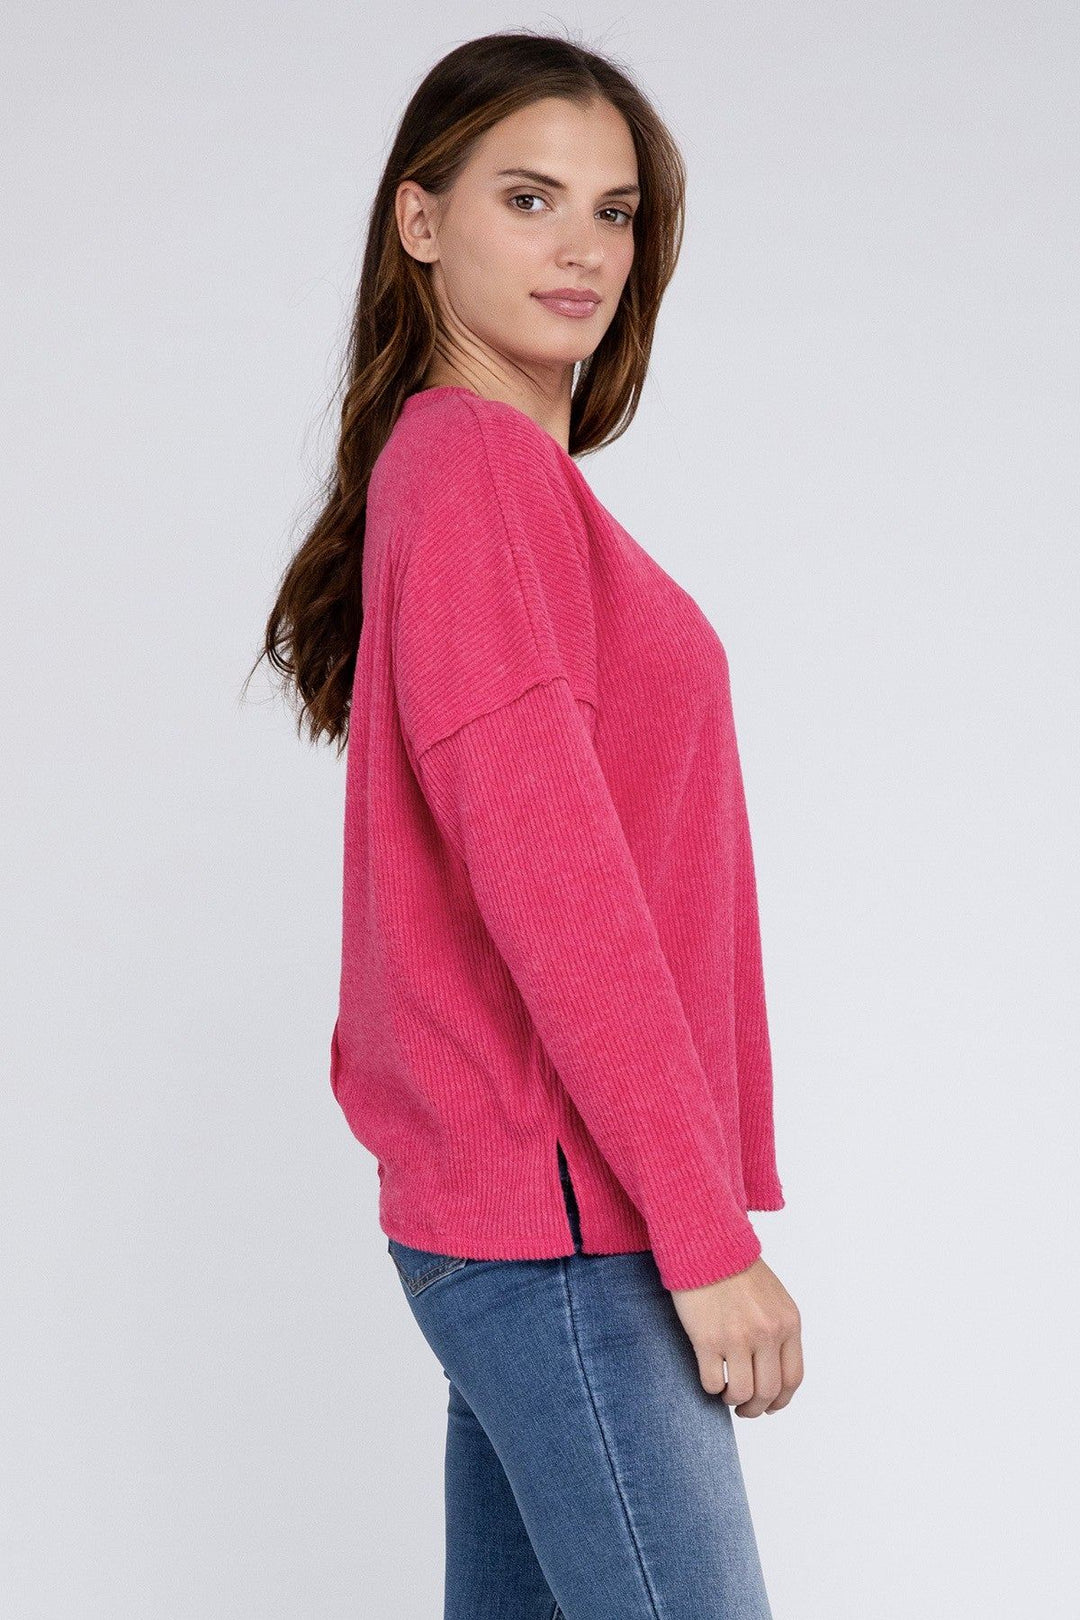 Zenana Ribbed Brushed Melange Hacci Sweater - Inspired Eye Boutique